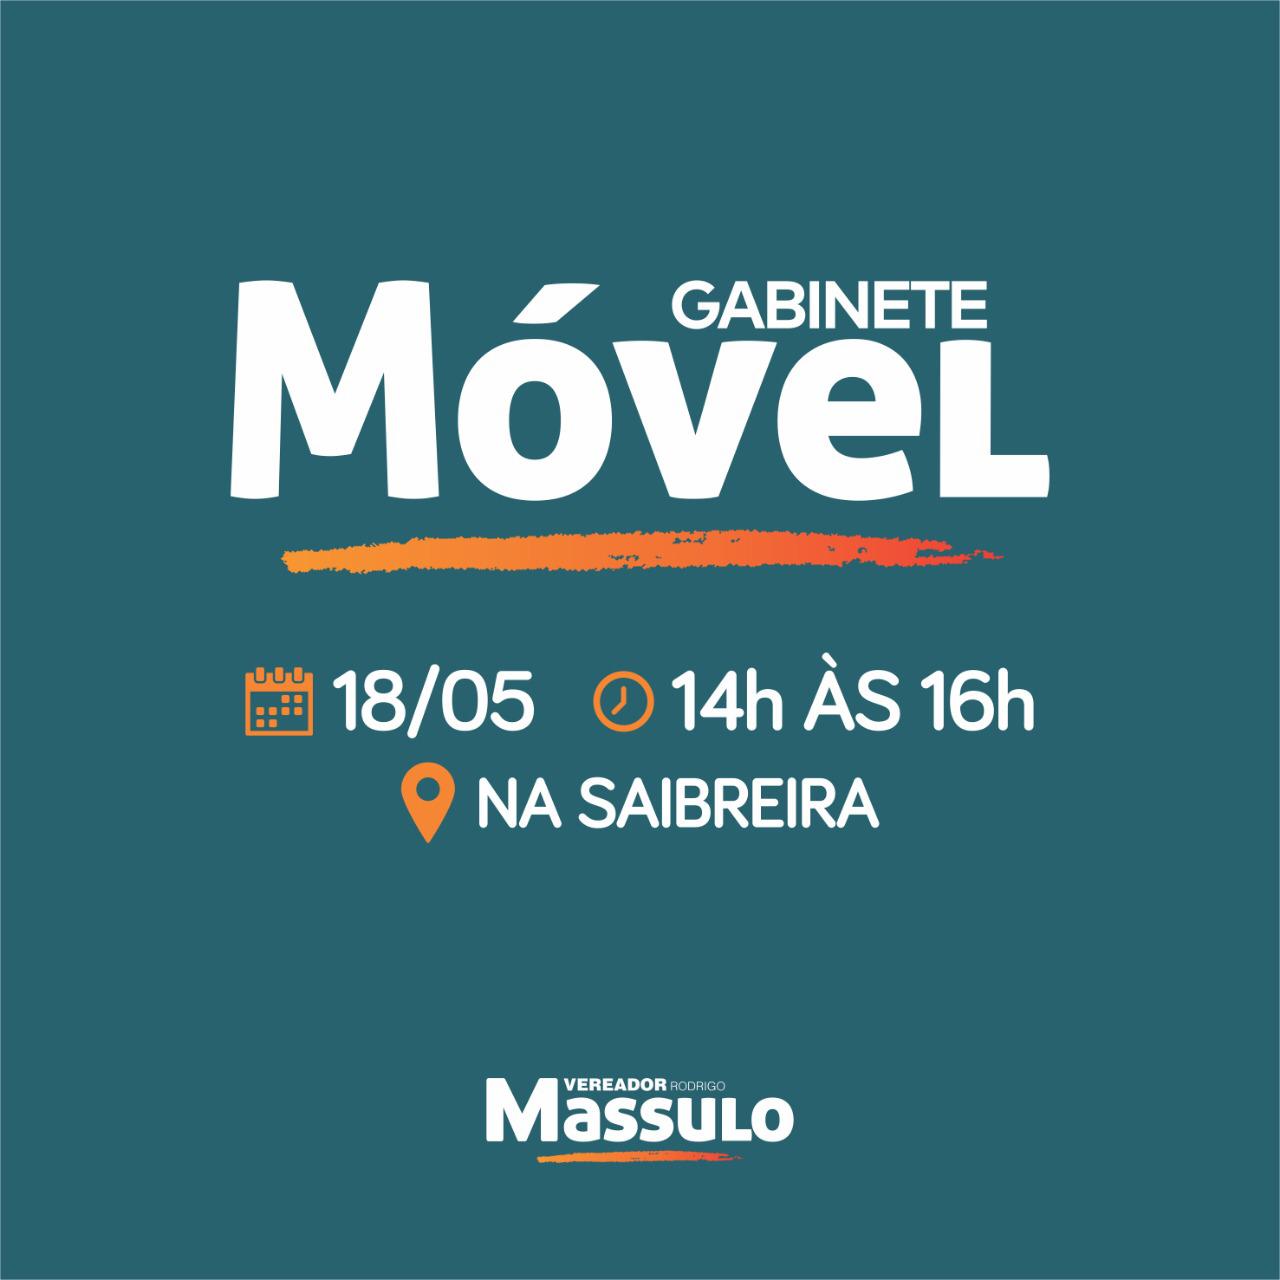 Gabinete Móvel do Vereador Massulo será na Saibreira neste sábado